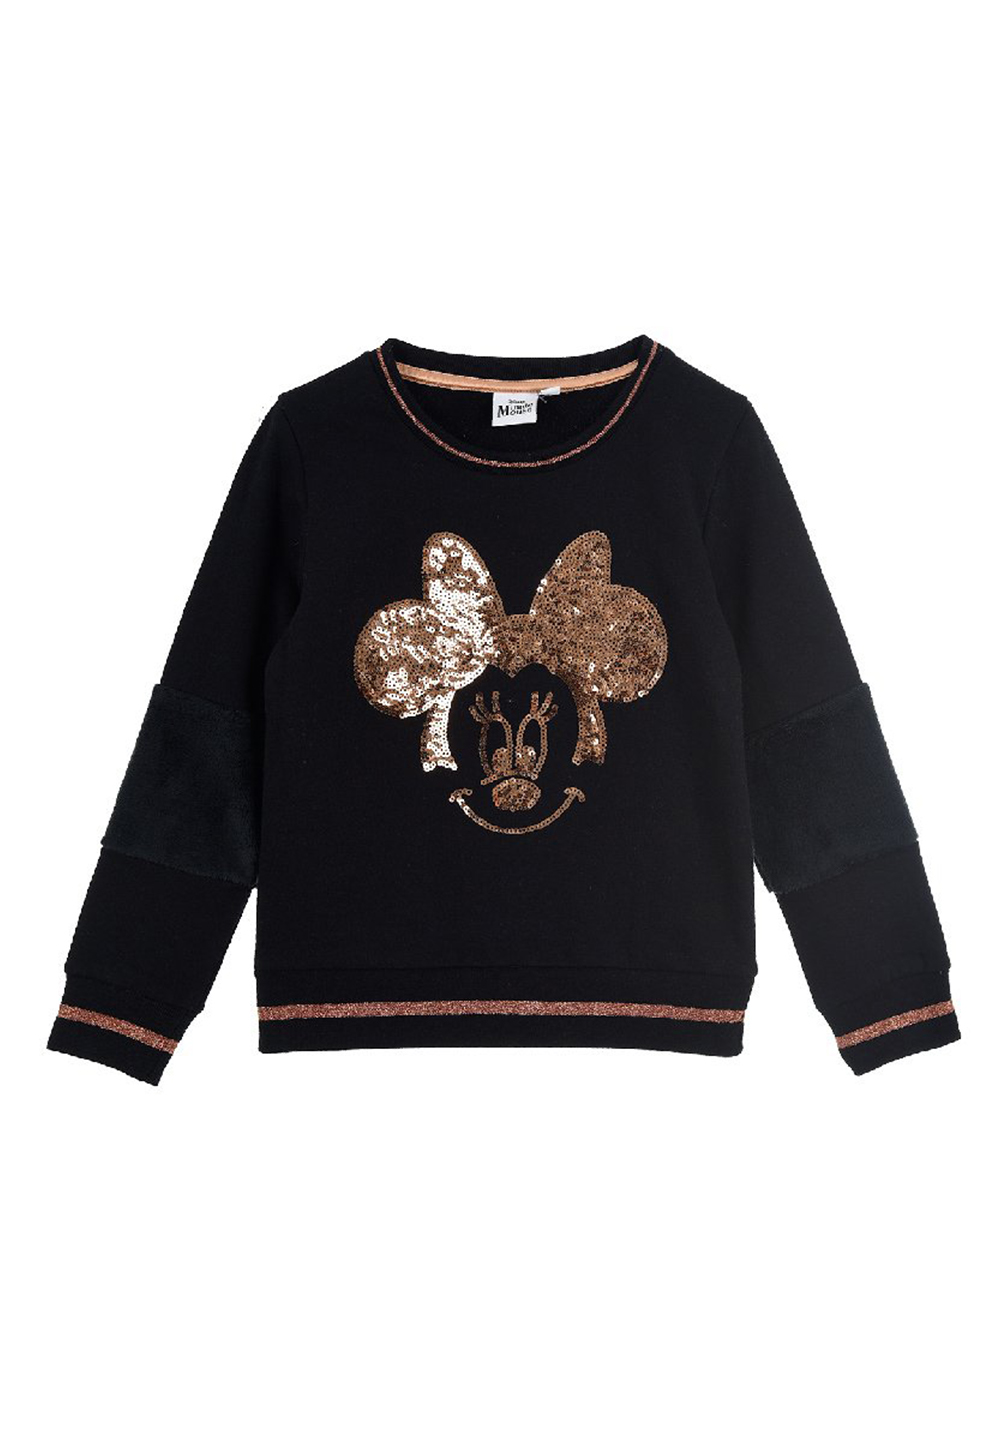 Пуловер Disney Minnie Mouse Kinder Sweatshirt mit Pailletten, черный